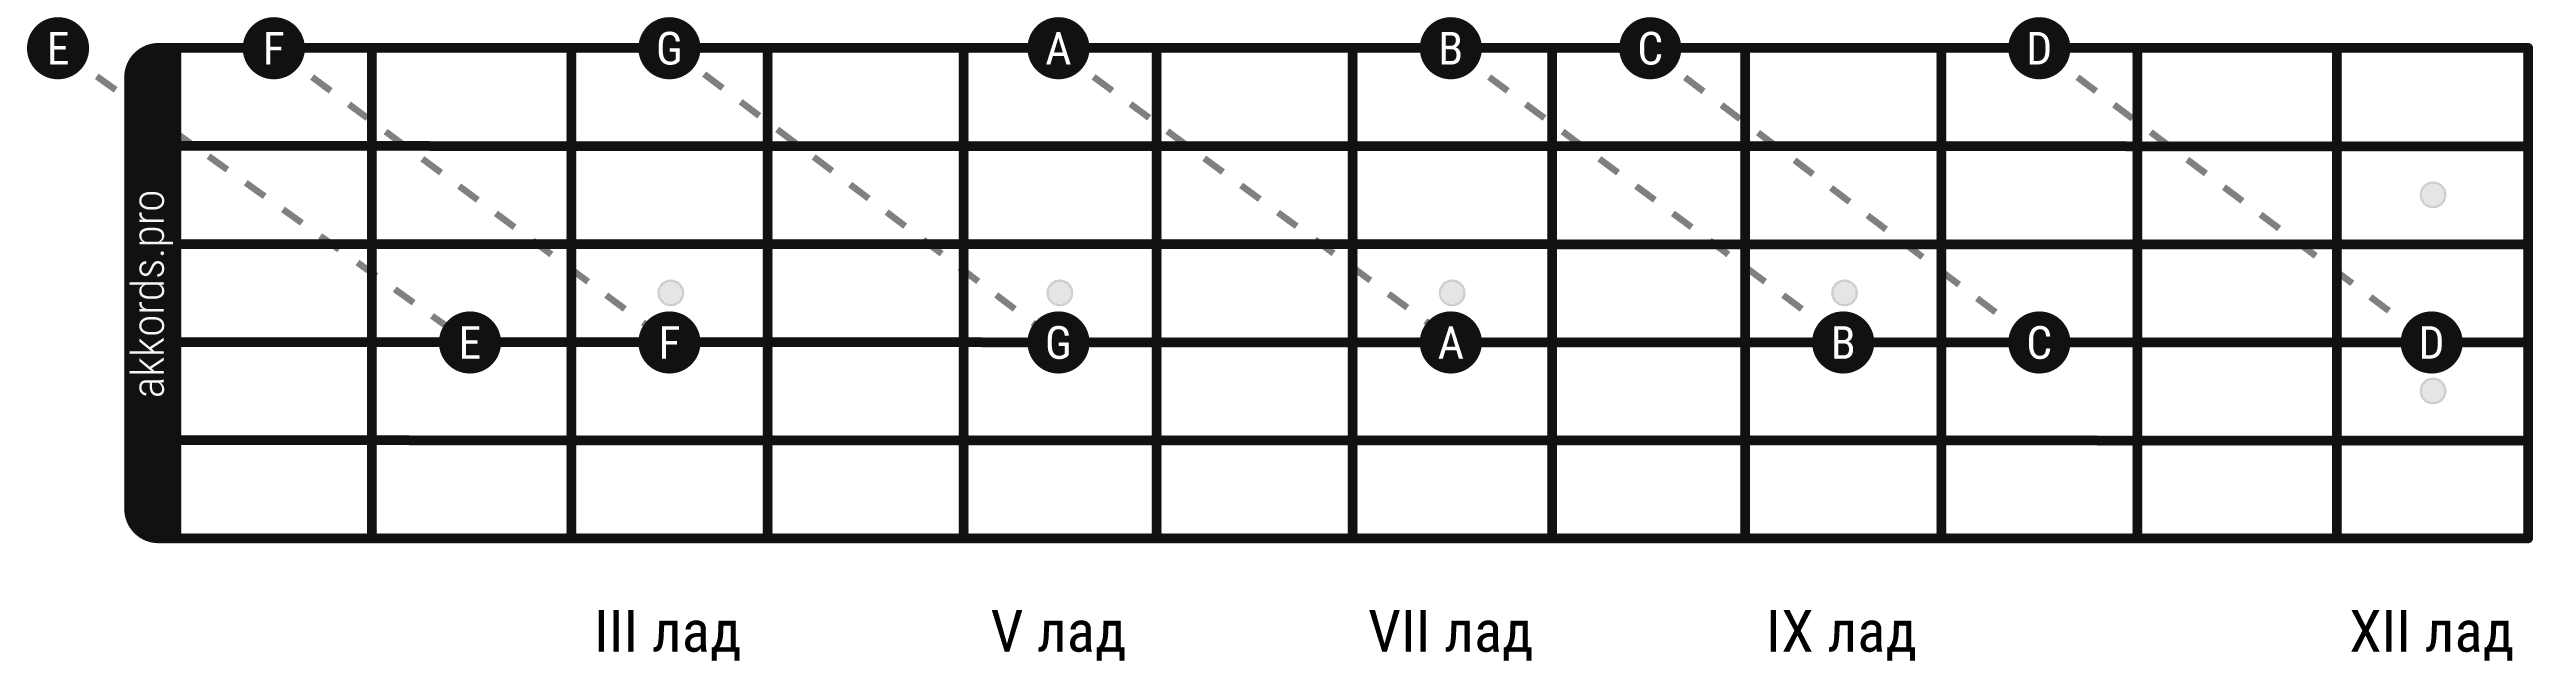 Ноты на грифе гитары: поиск нот по октавным формам от 1 струны